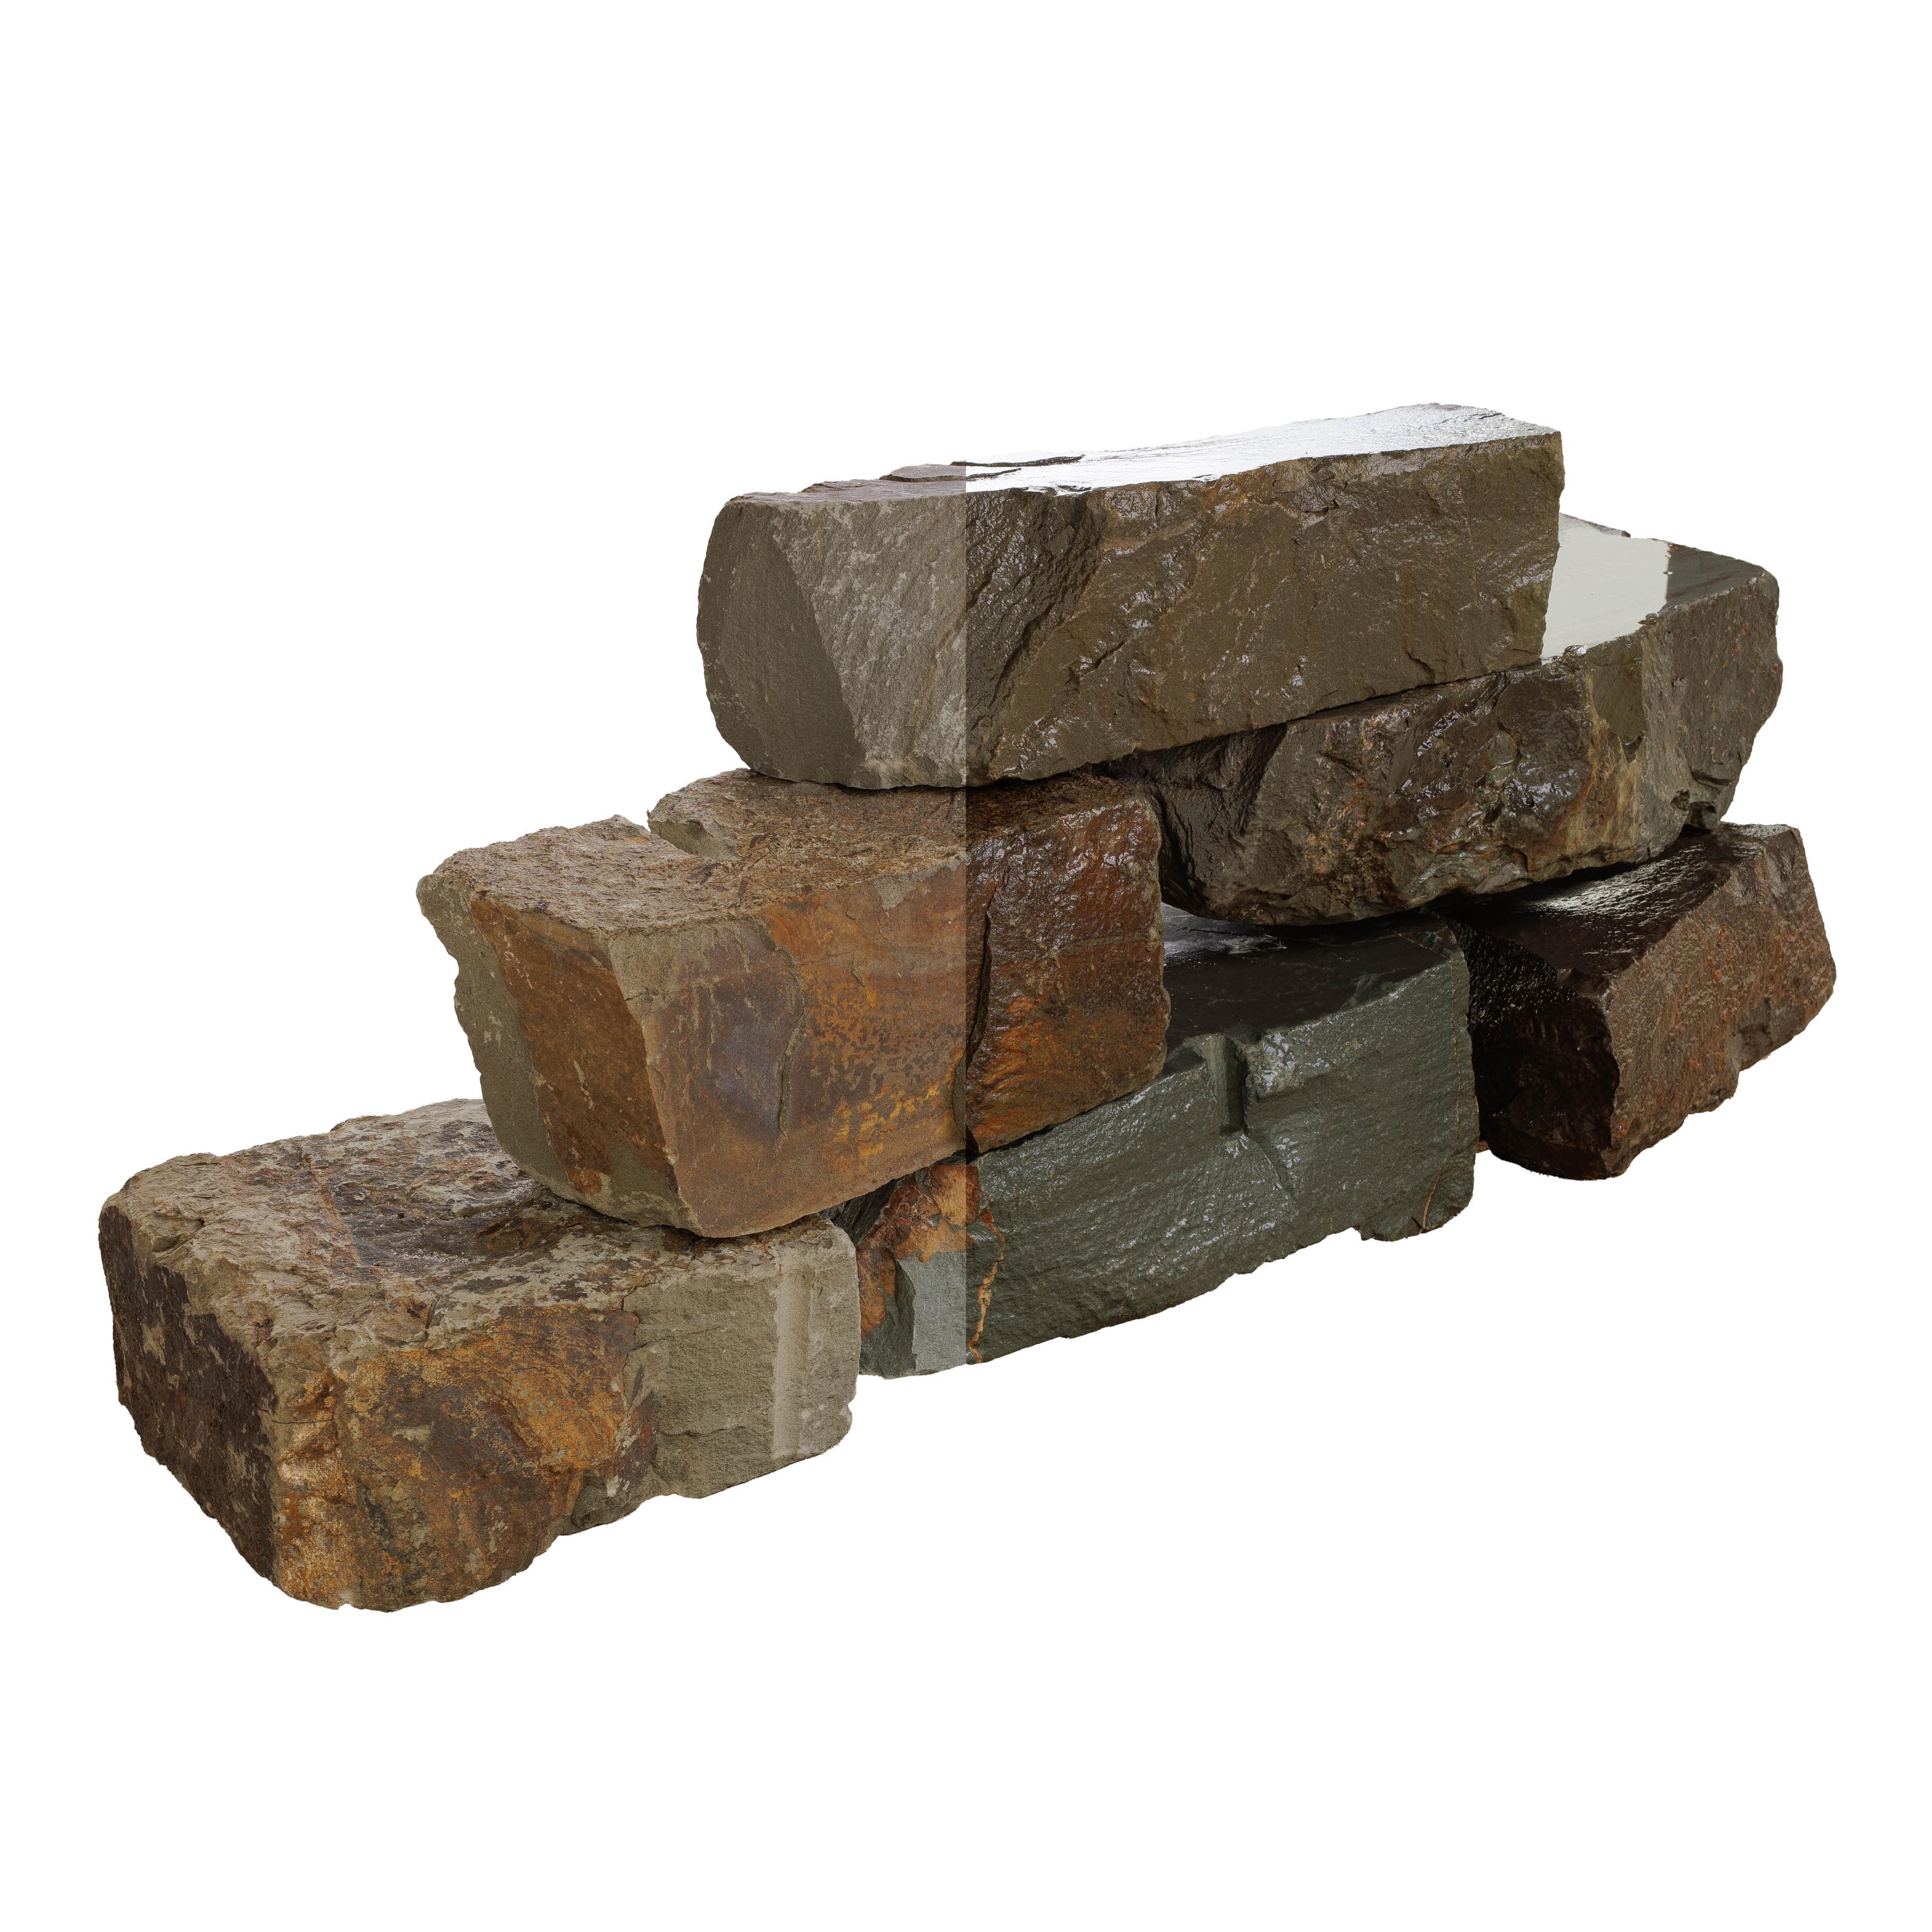 Mauersteine, Grauwacke grau/braun gespalten, Grauwacke Mauersteine, ca. 10?20 x 20?30 x 20?60 cm (grau/braun), gespalten